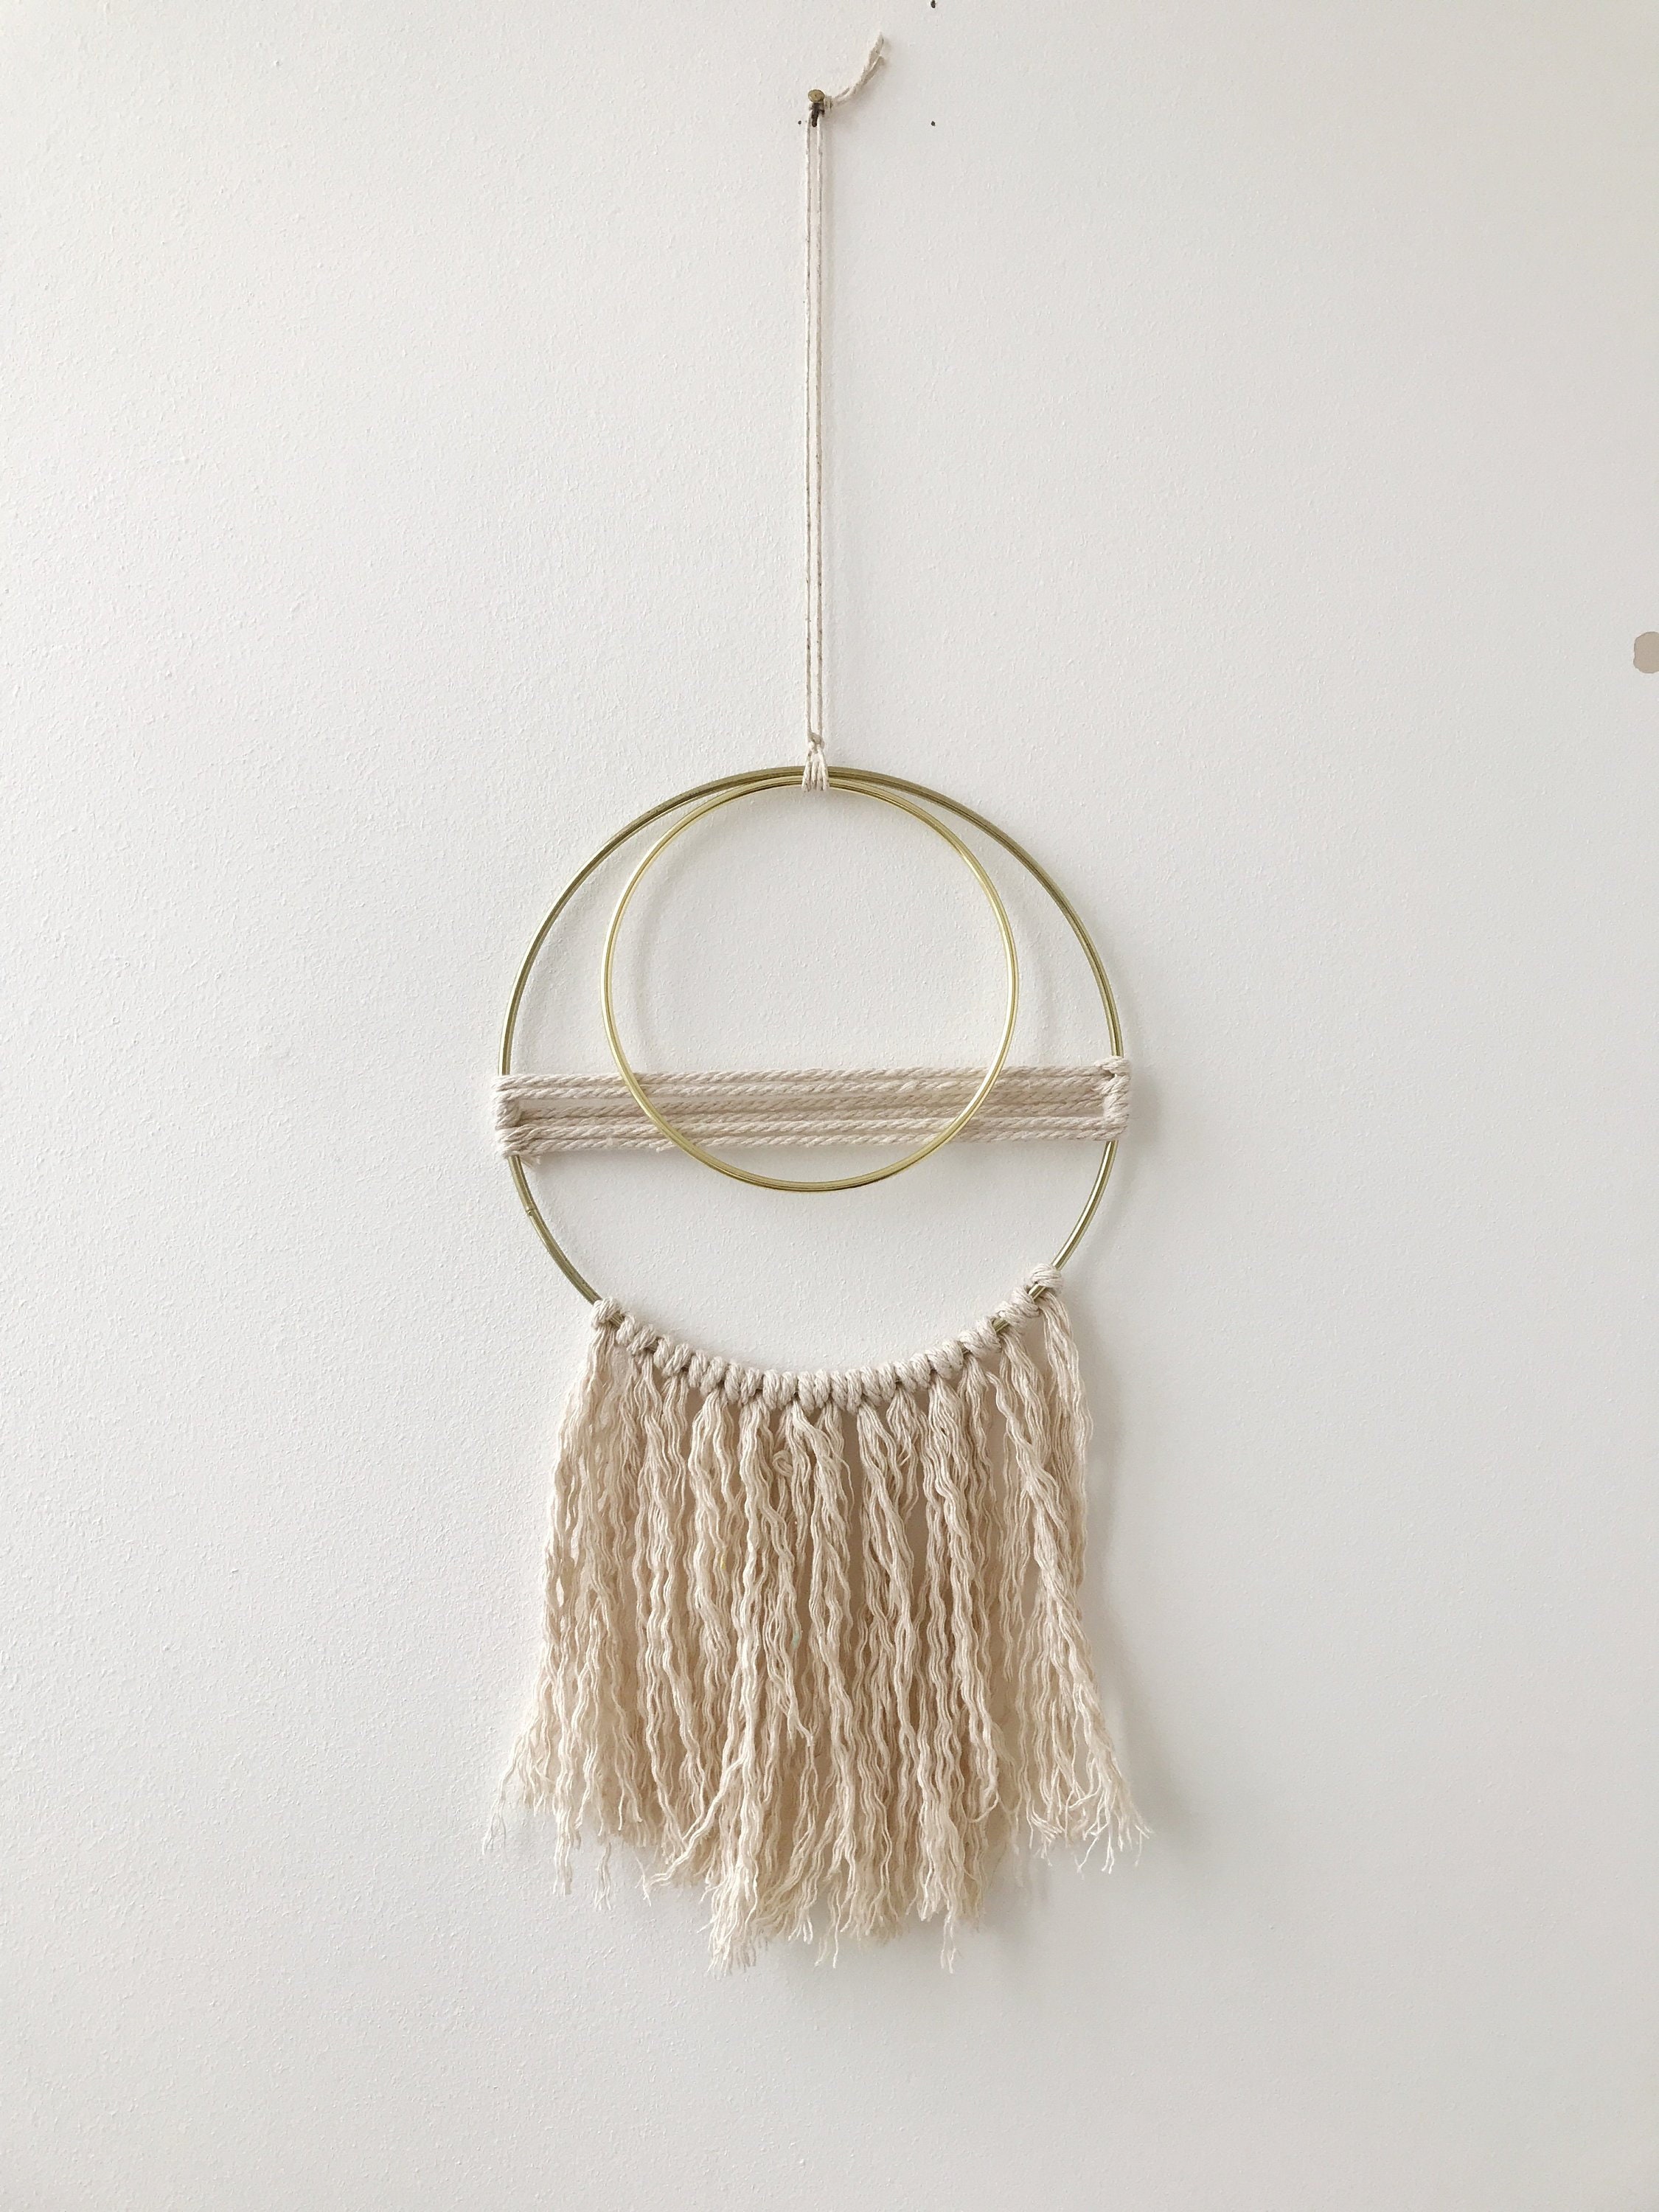 Macrame rings, dress-it-up wall hangings/Pathos propagation: wall